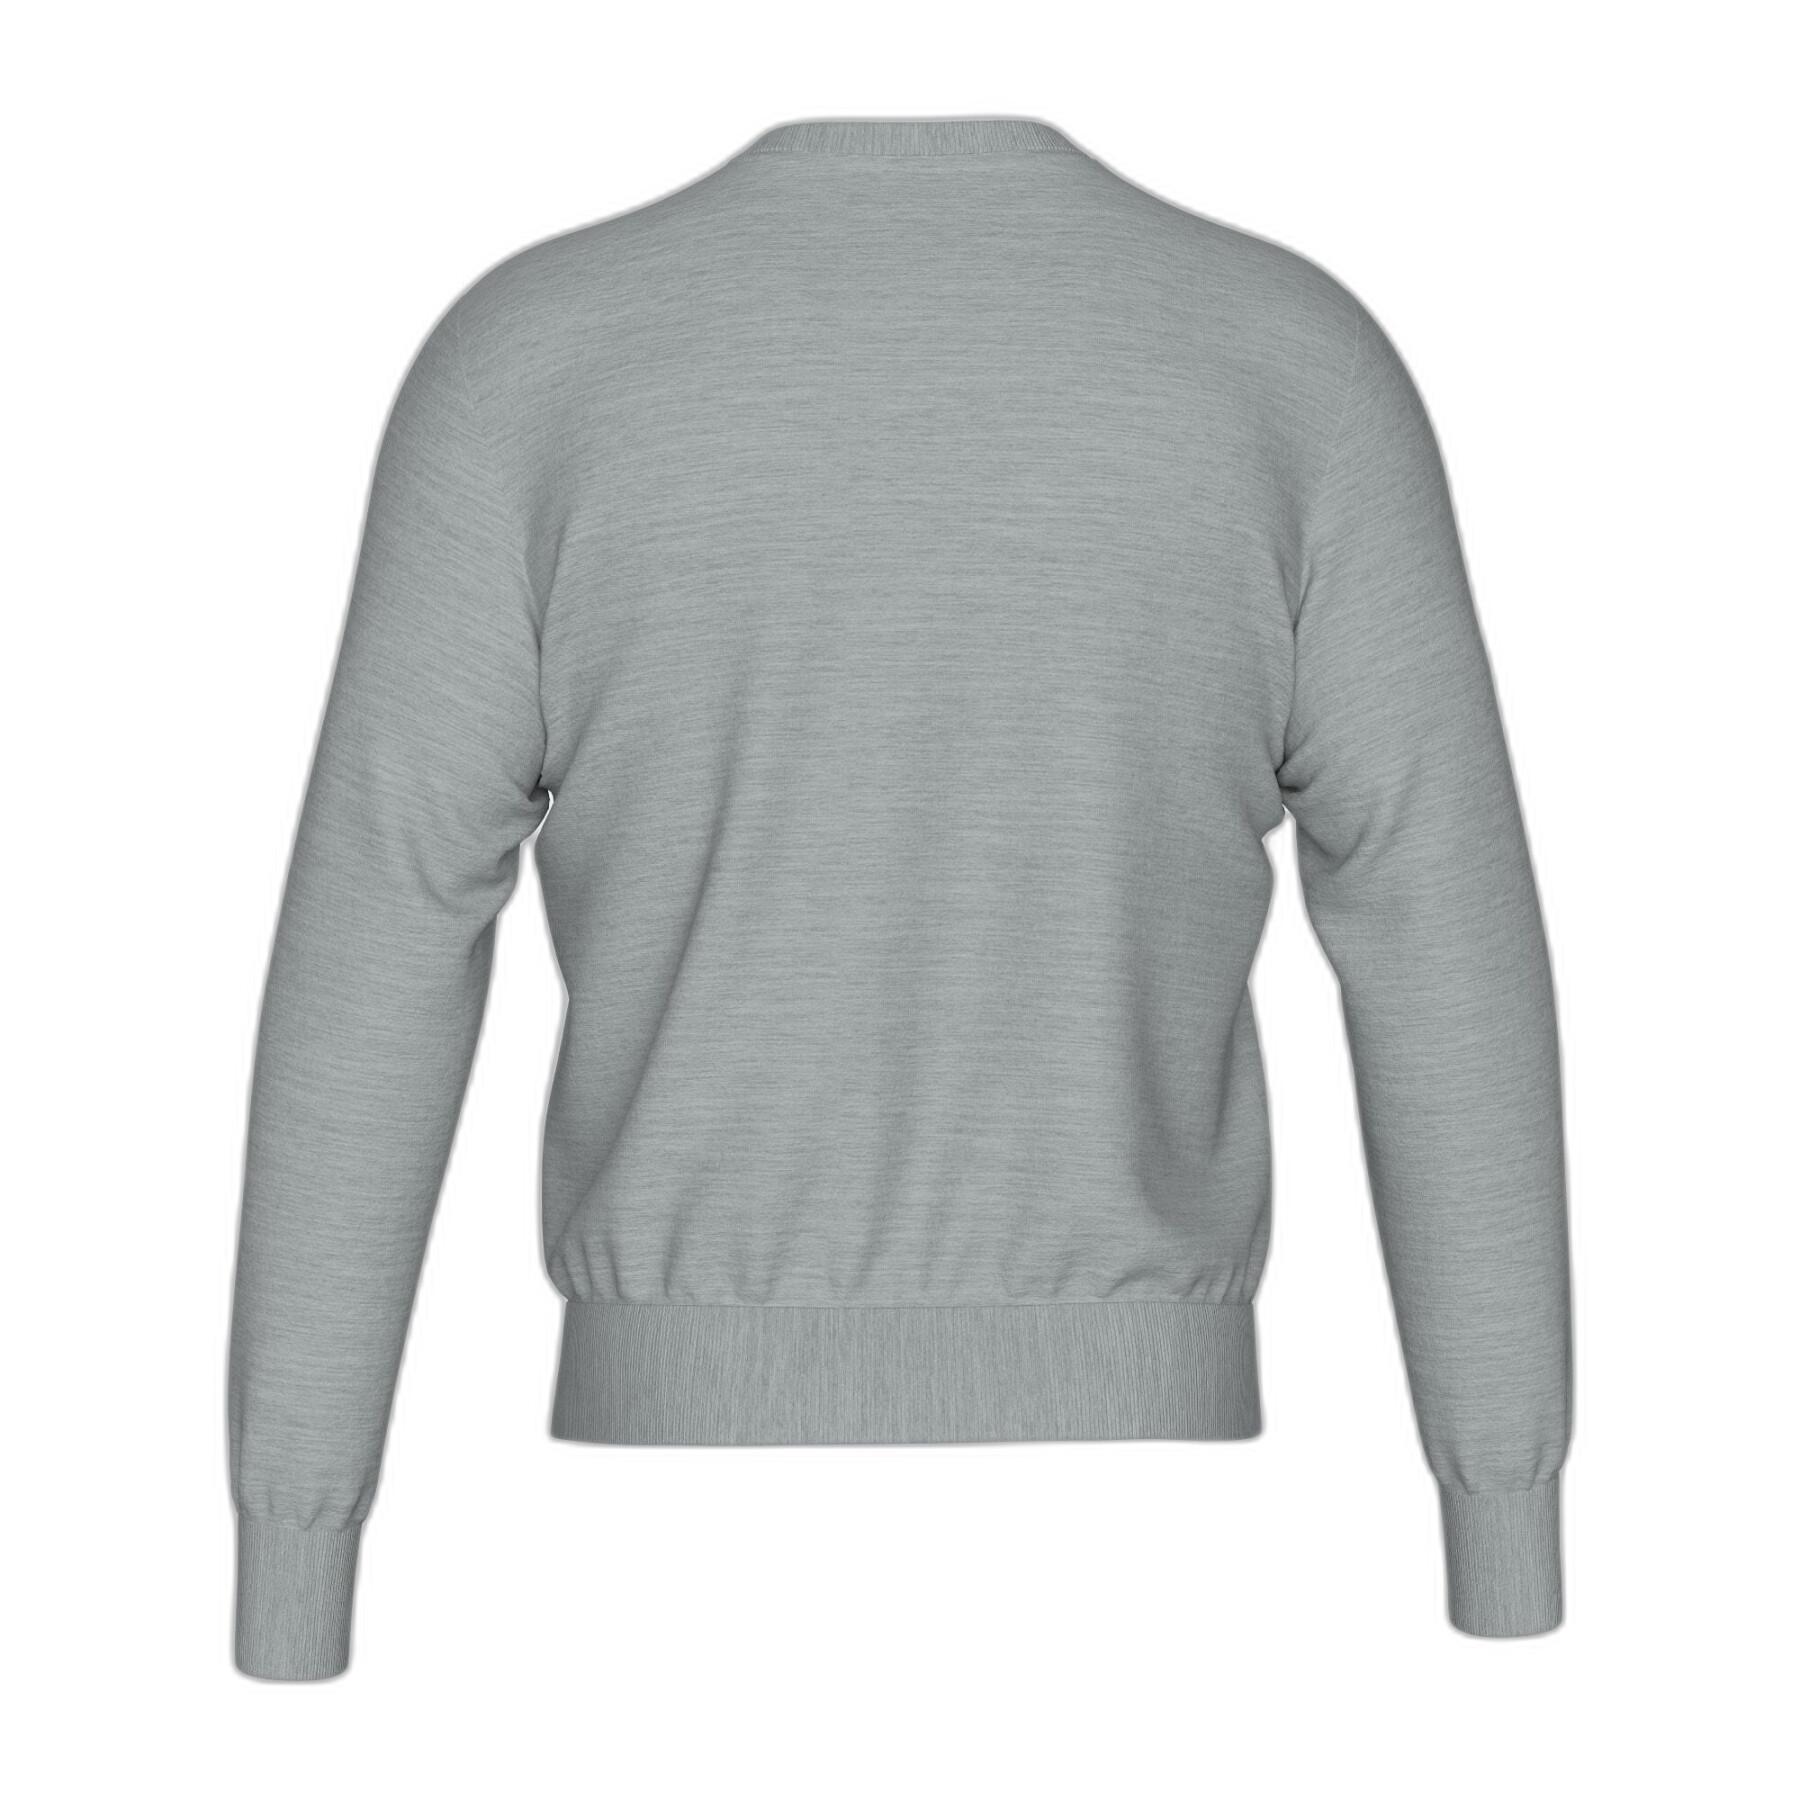 Sweatshirt embroidered round neck Errea Essential 28